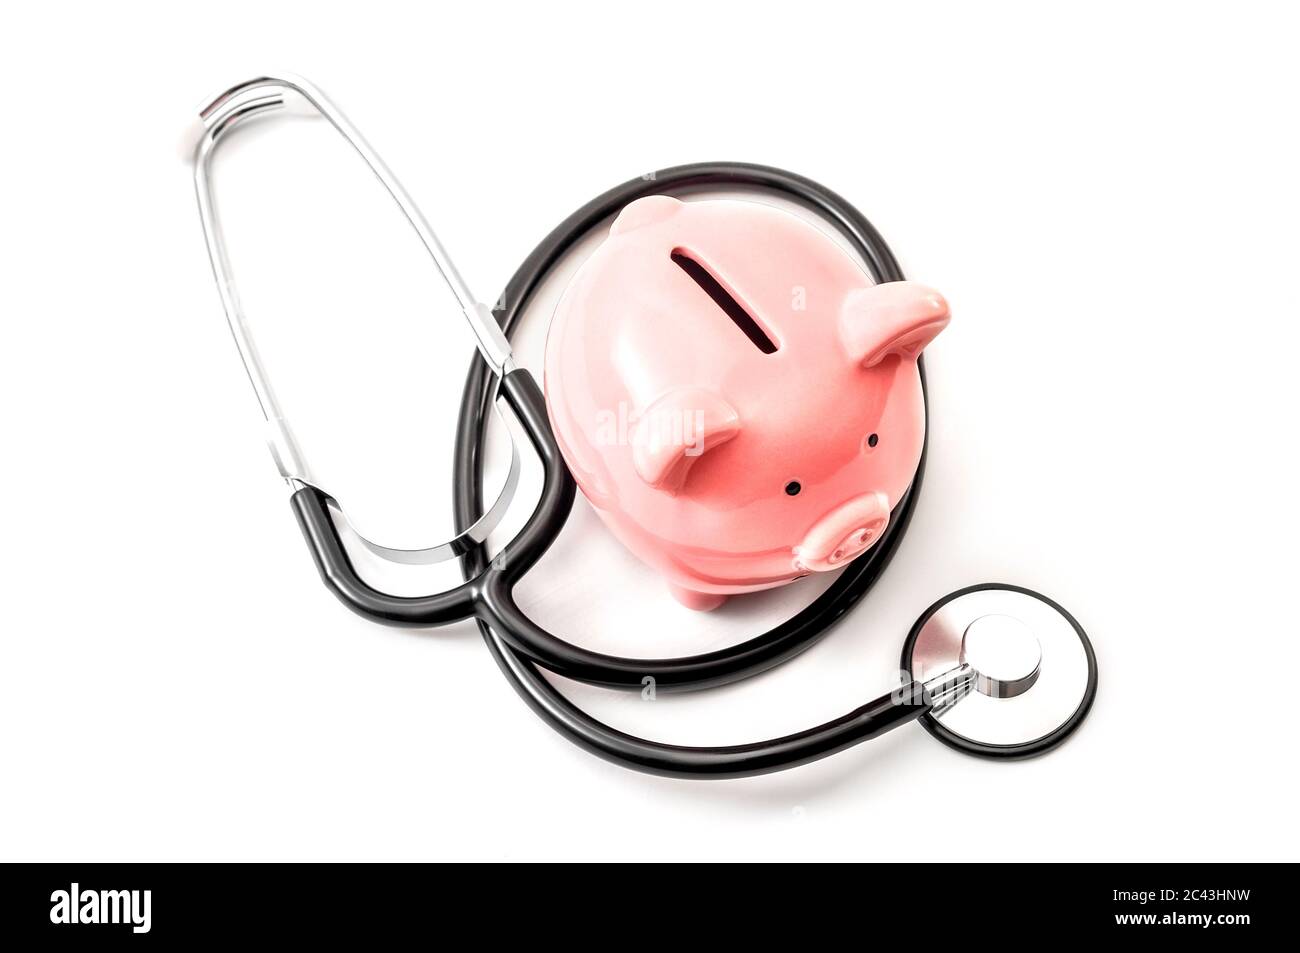 Costo sanitario e il prezzo elevato di assicurazione sanitaria di qualità concetto di assicurazione con uno stetoscopio e una banca rosa piggy isolato su sfondo bianco Foto Stock